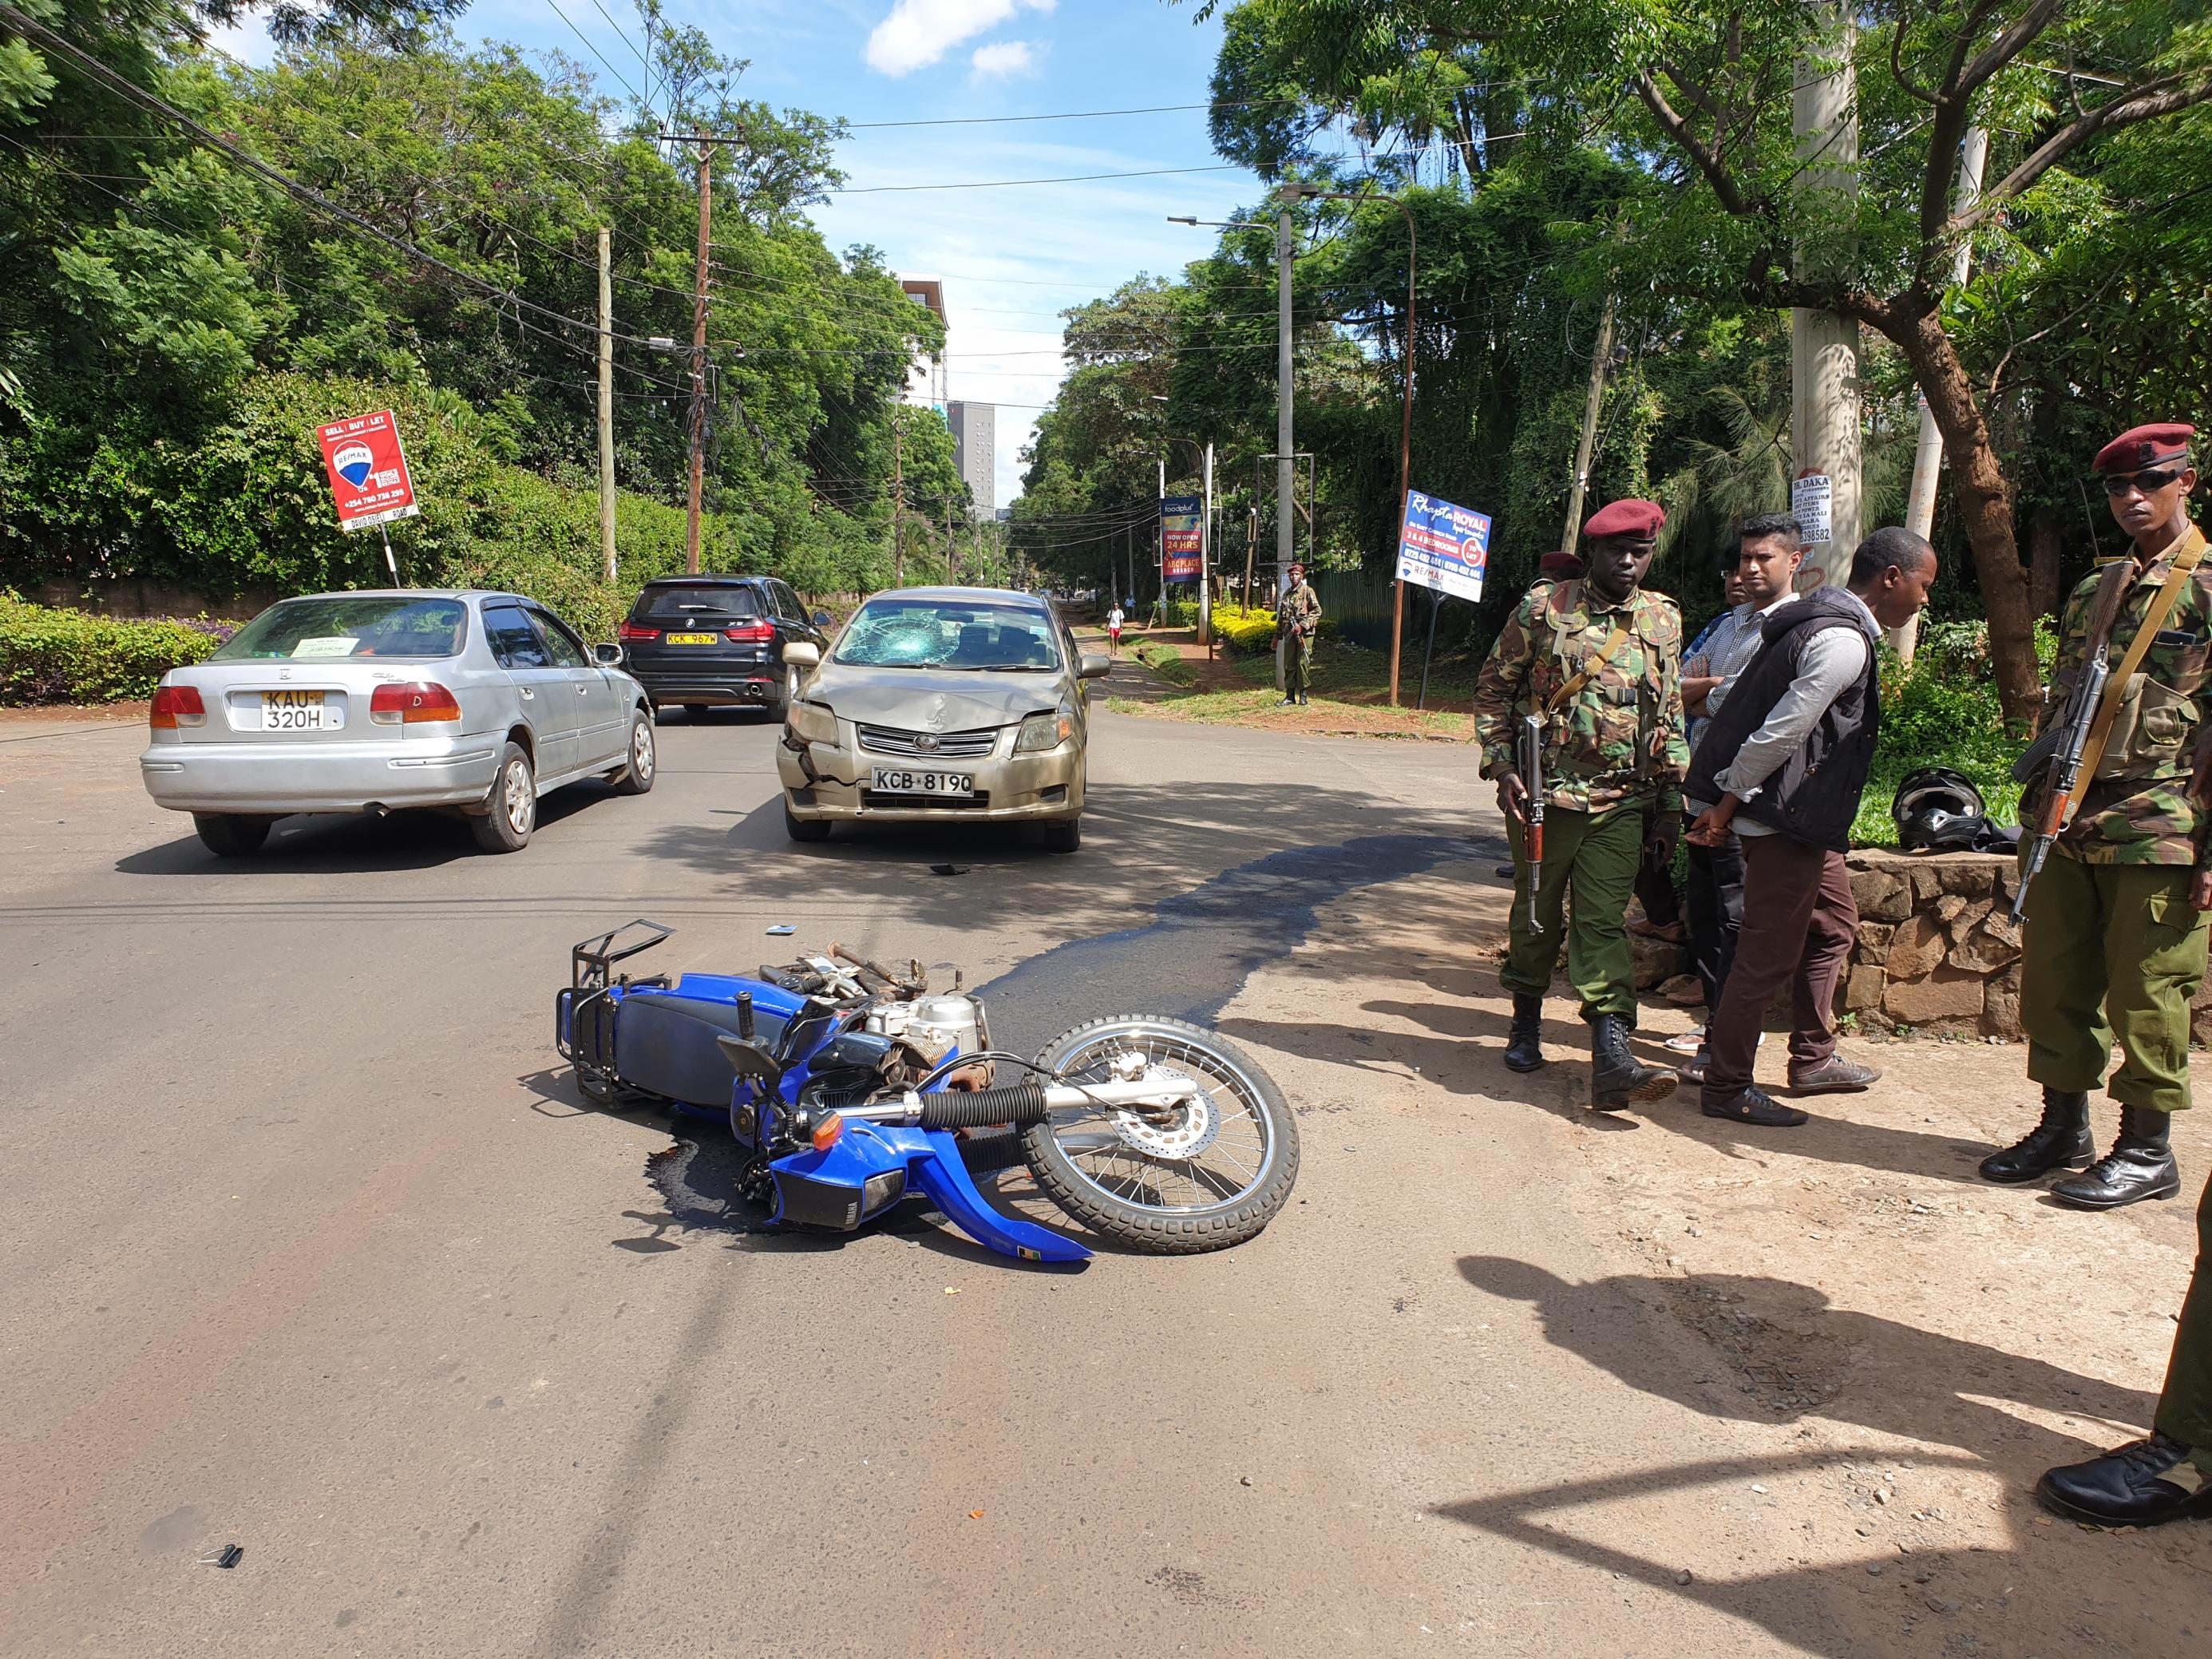 Zu sehen sind ein leicht beschädigter PKW, ein Motorrad, das davor auf der Straße liegt und am Rand einige Polizisten.